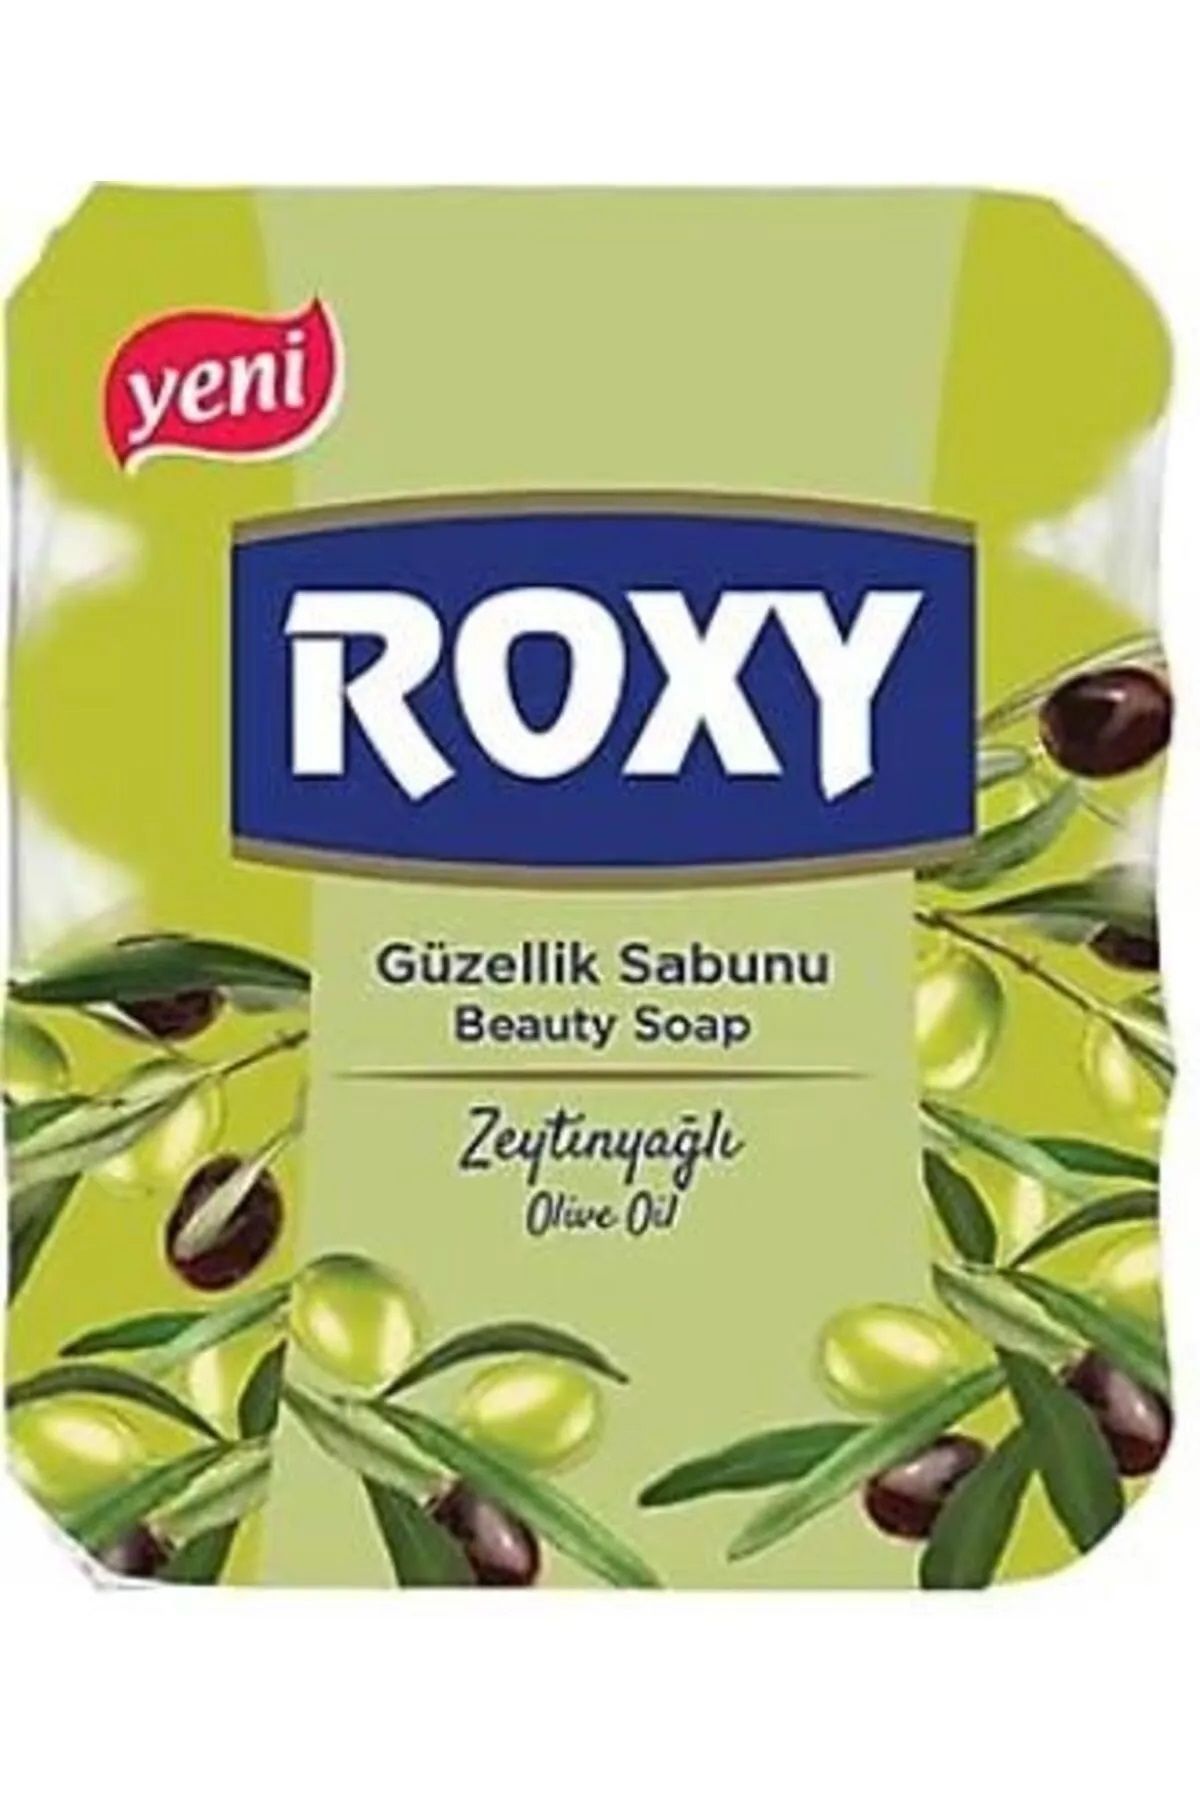 Dalan Roxy Güzellik Sabunu Zeytinyağlı 4 X 70 Gr.